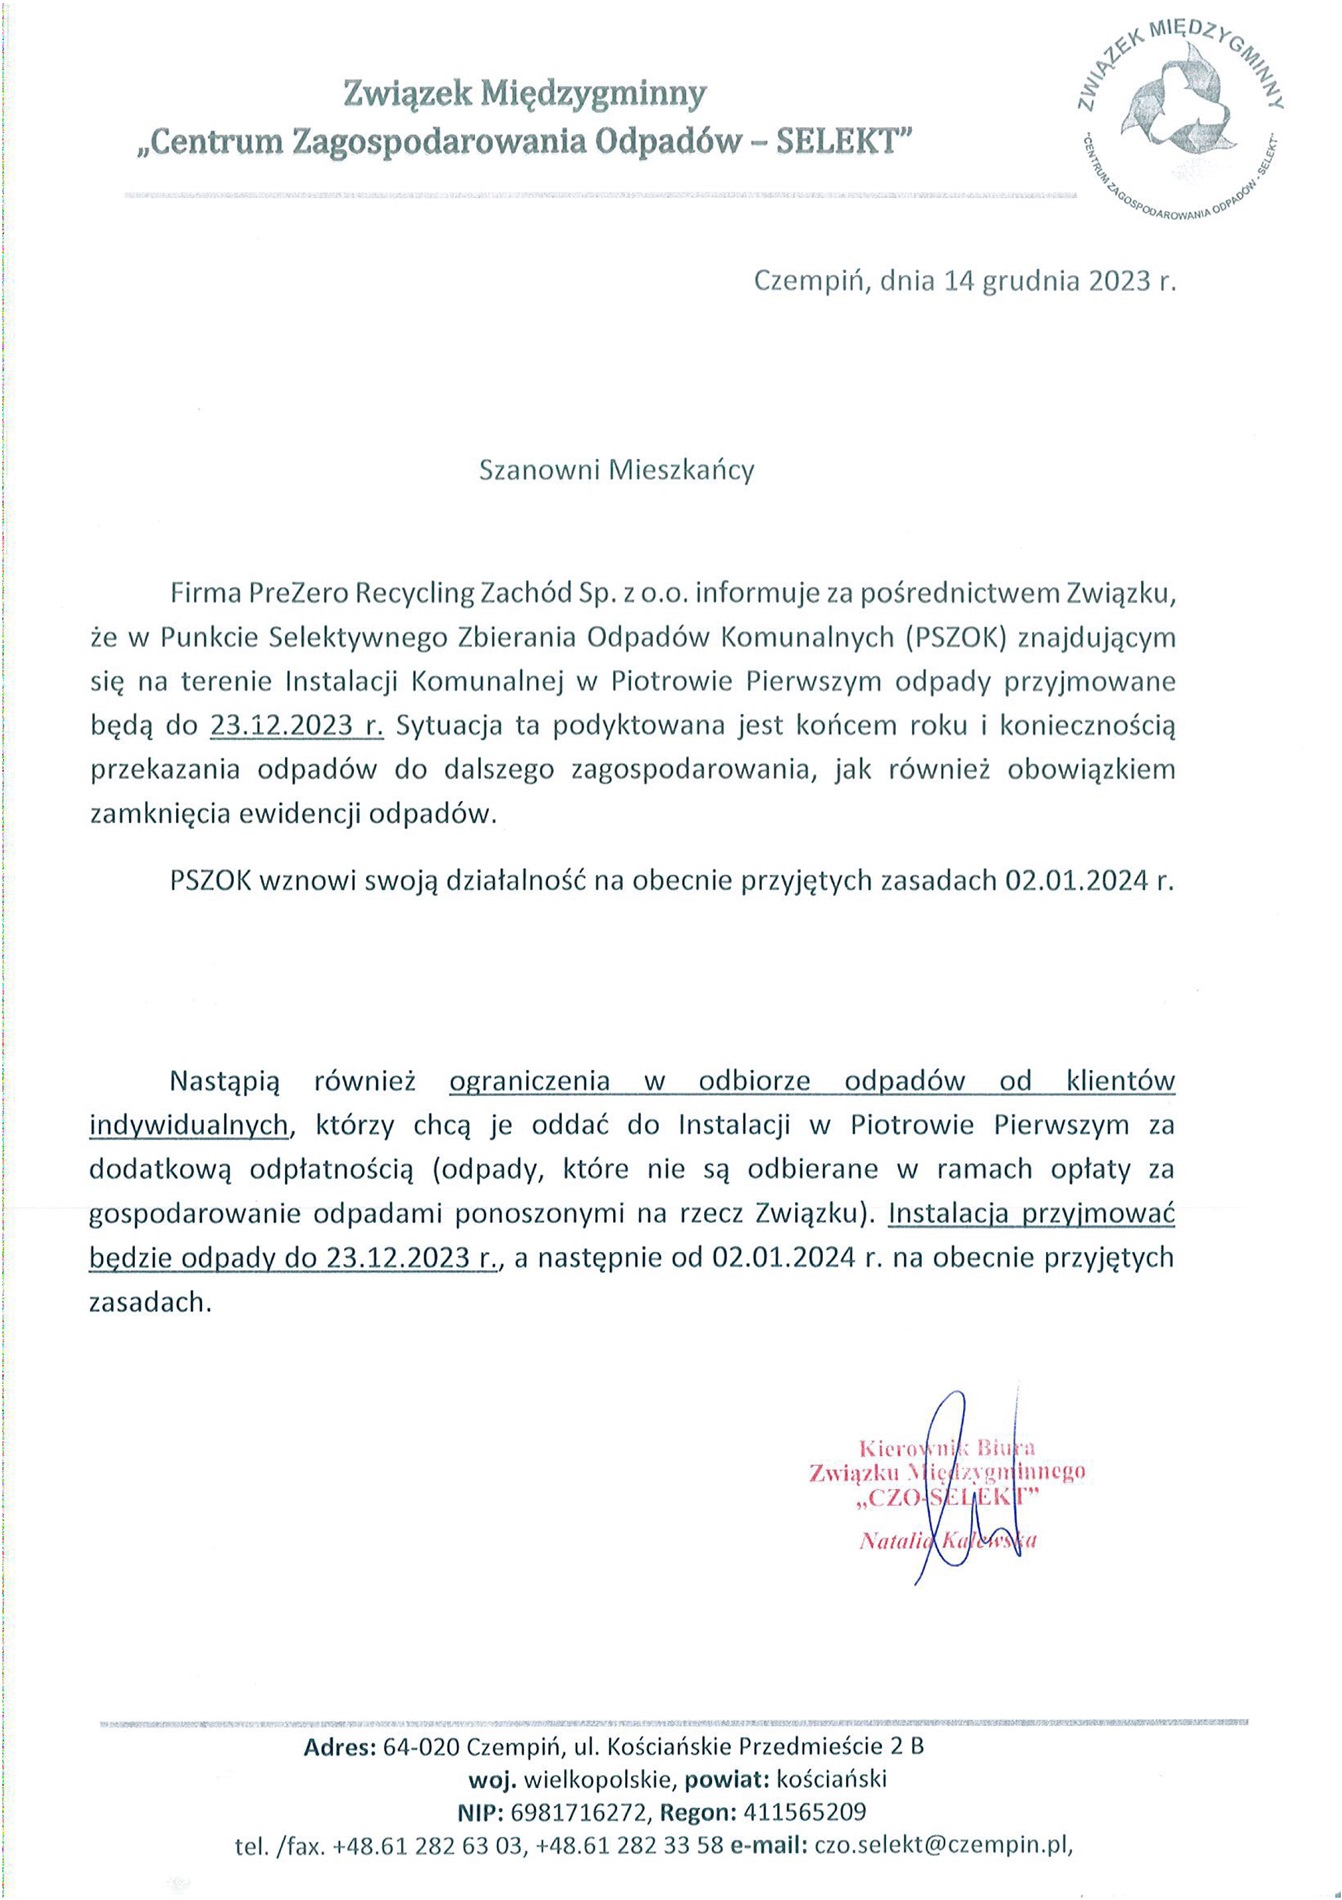 Informujemy, że w Punkcie Selektywnego Zbierania Odpadów (PSZOK) w Piotrowie Pierwszym odpady będą przyjmowane do 23 grudnia br.